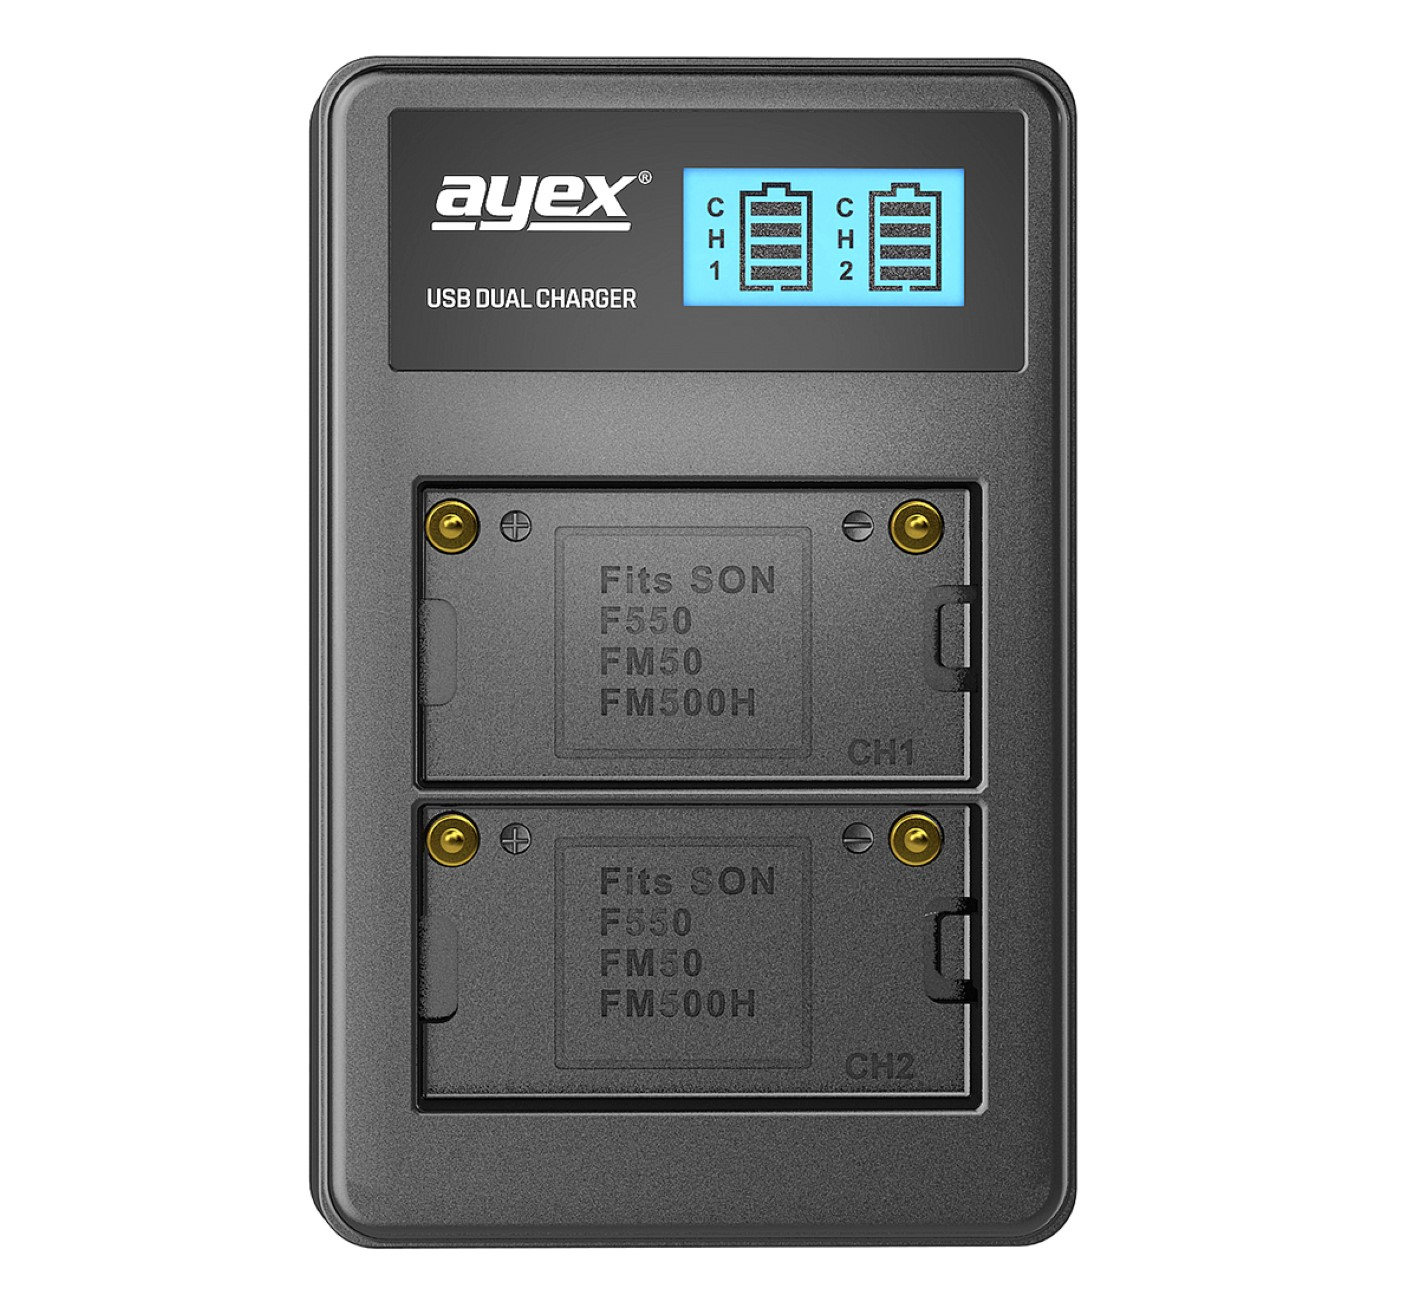 AYEX USB Lader, Kamera-Akku Dual für Black Sony NP-FM50 NP-F550 NP-FM550H Akkus, Ladegerät